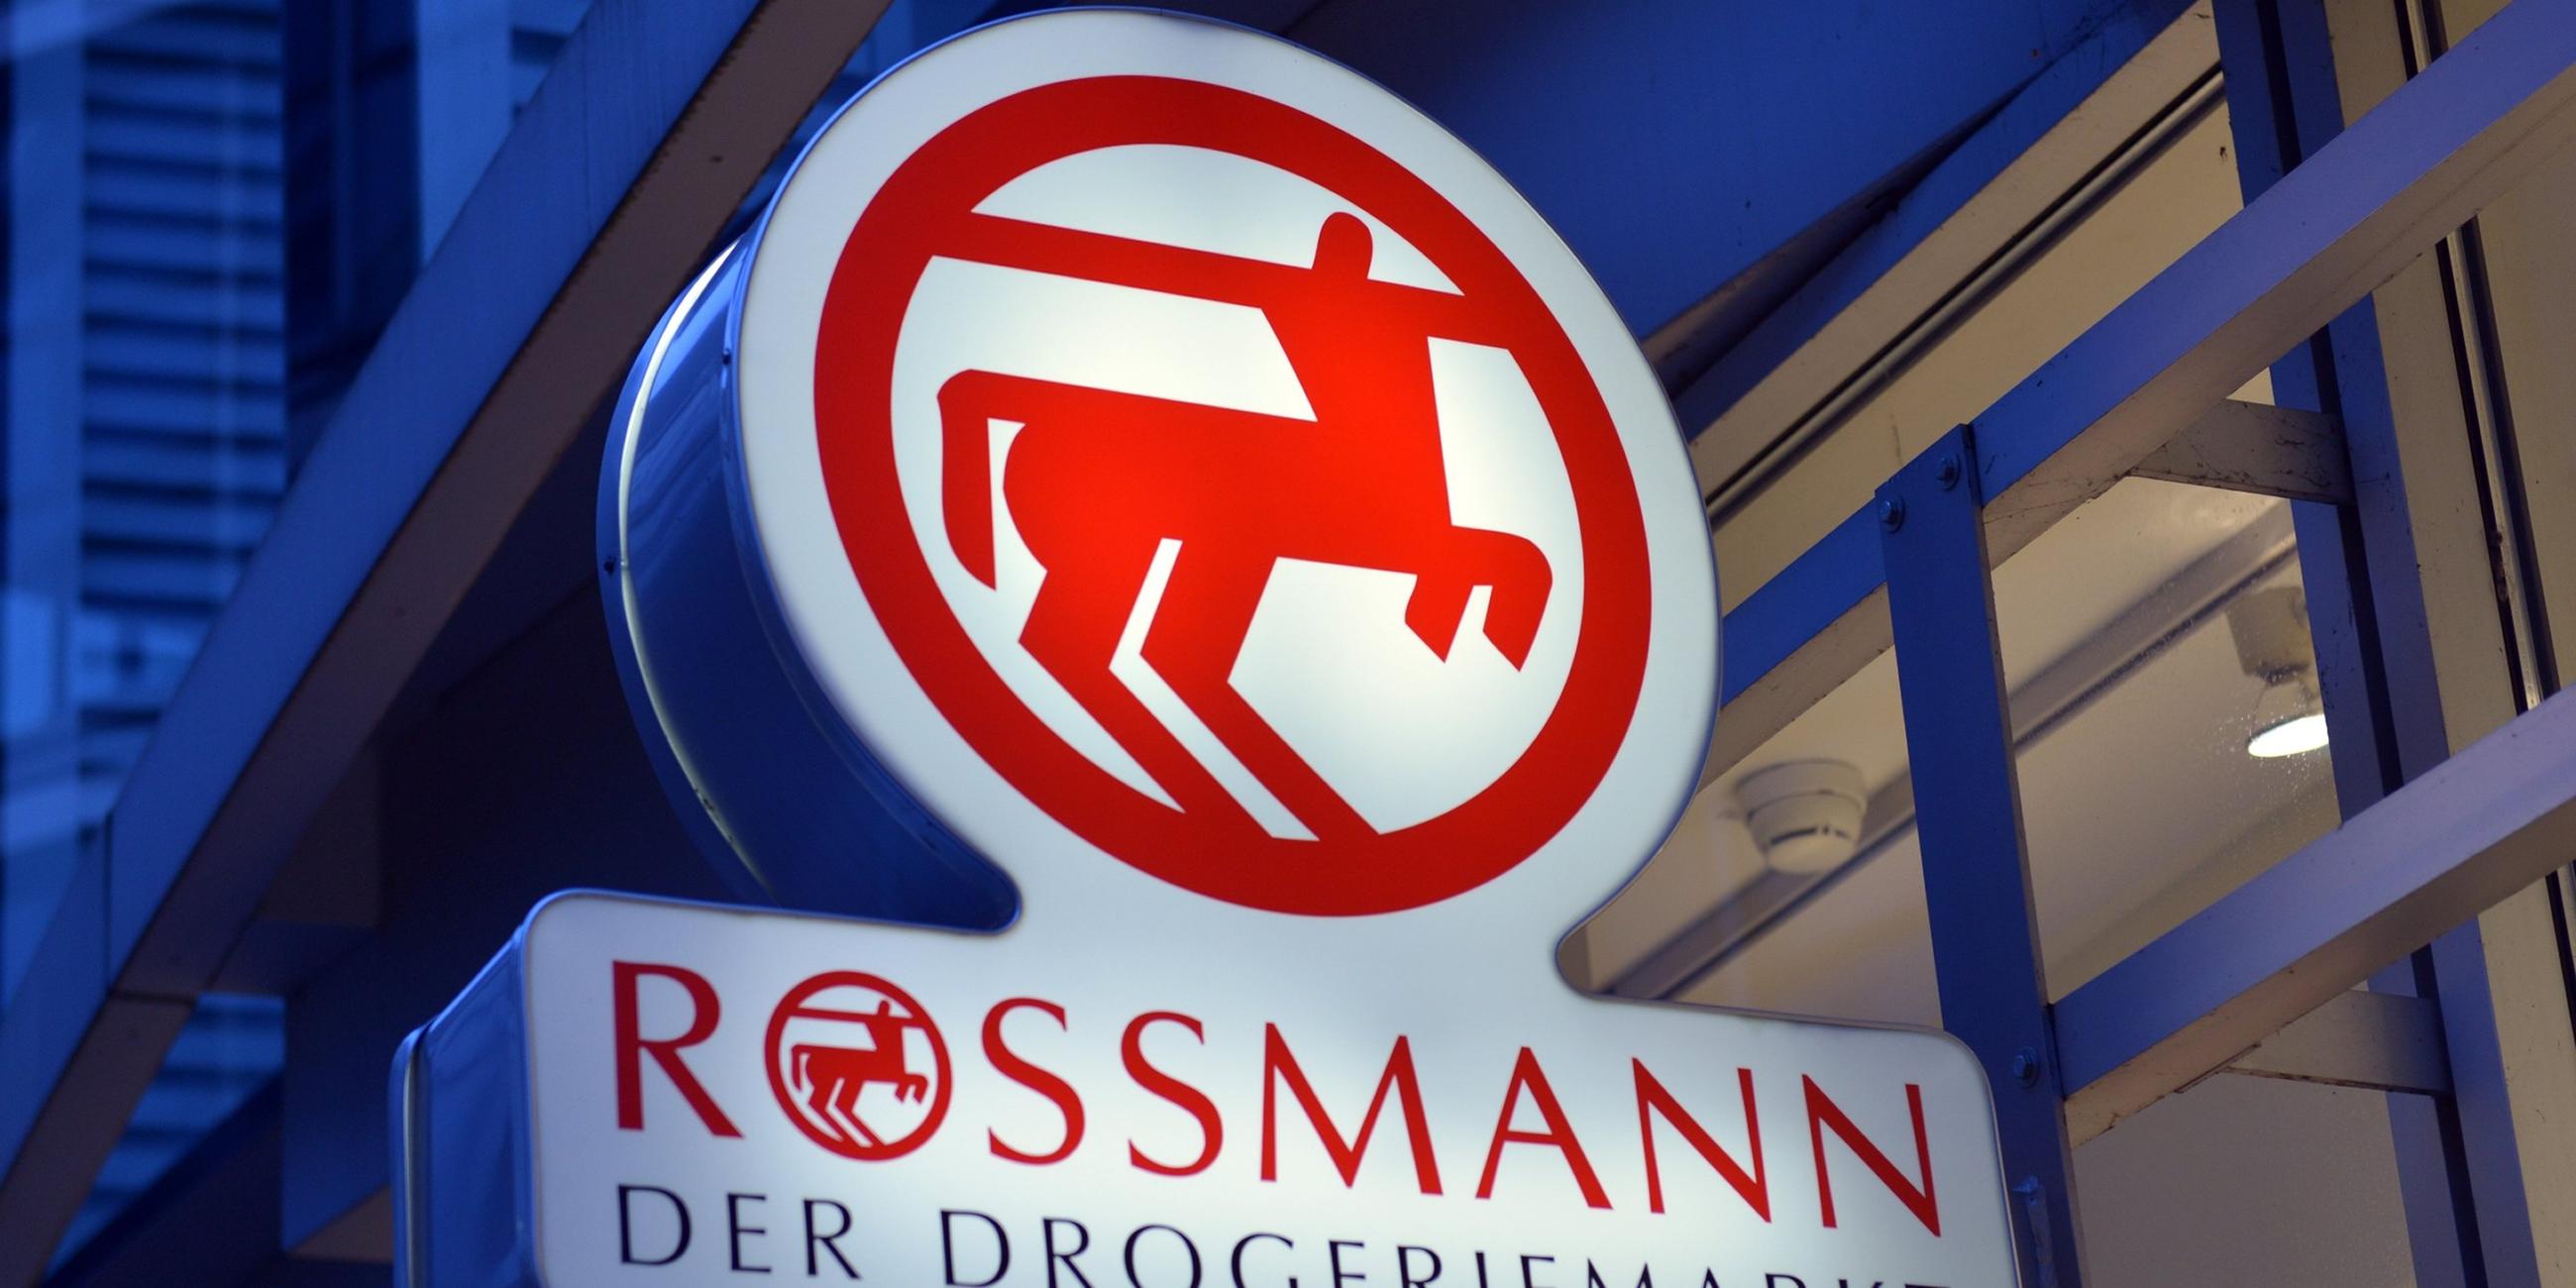 Drogeriemarkt Rossmann (Archiv).